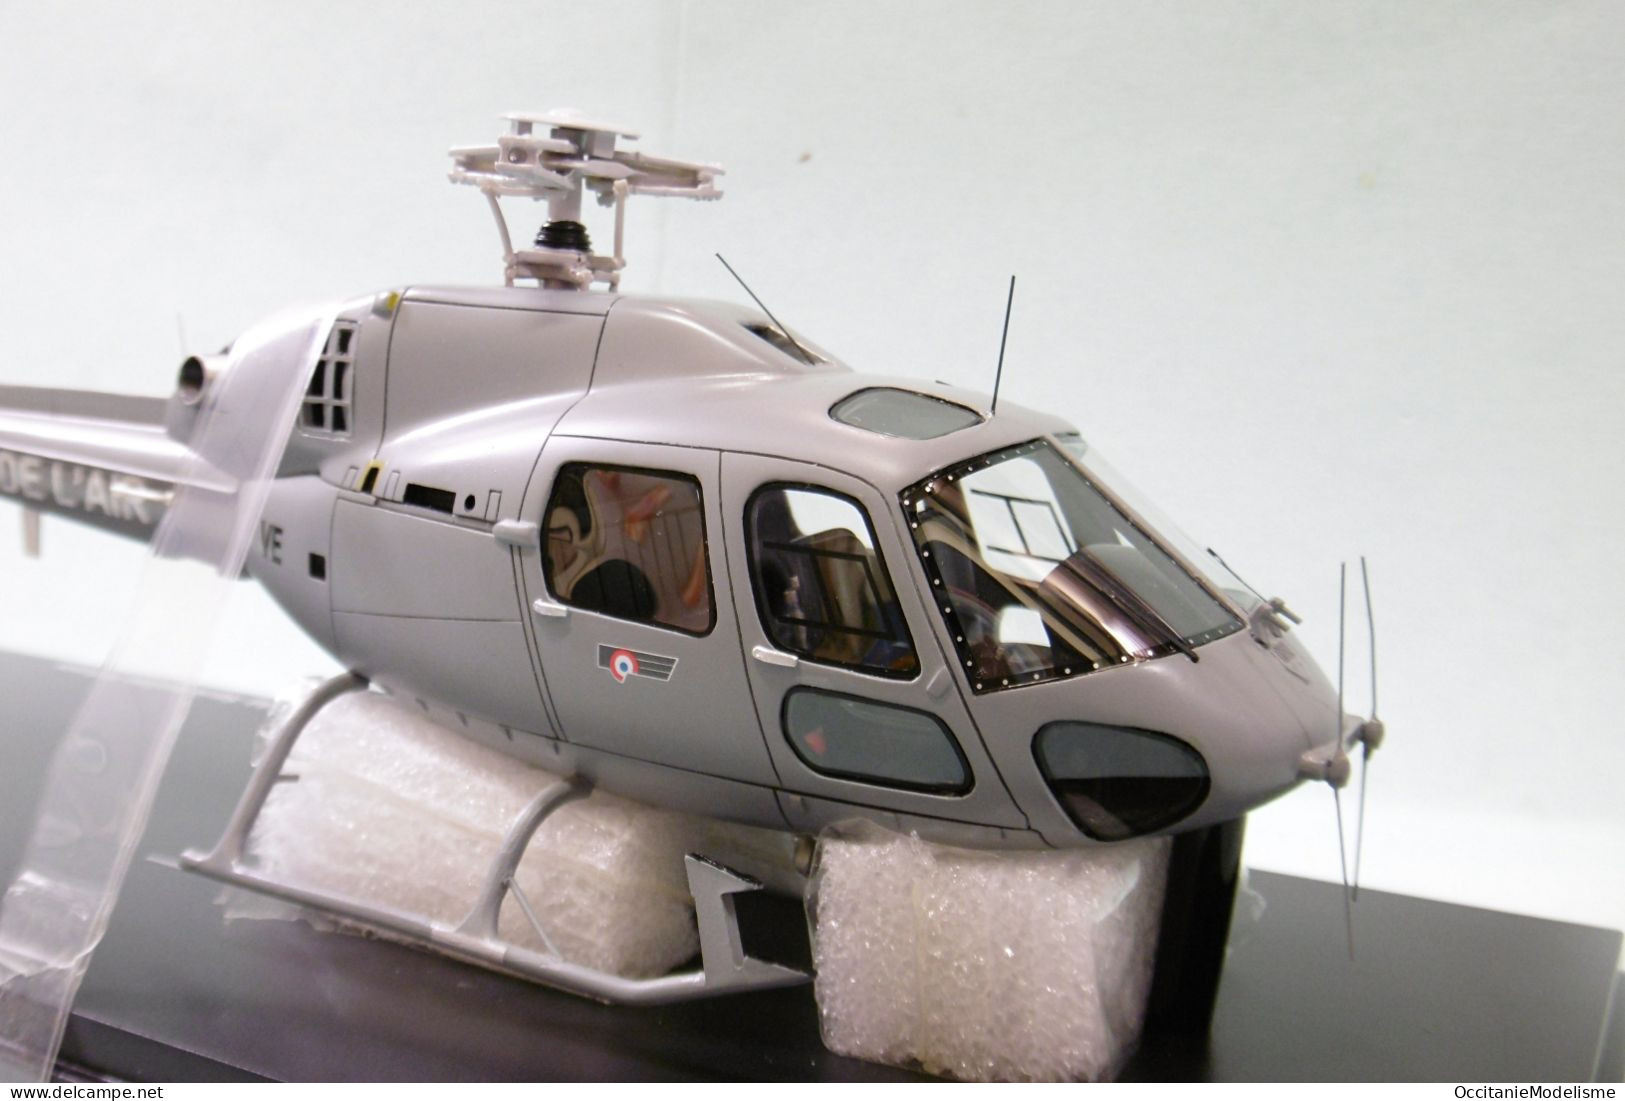 Perfex - Hélico AEROSPATIALE AS 555 FENNEC Armée De L'Air Série Limitée 150 Pcs Réf. 732 Neuf NBO 1/43 - Airplanes & Helicopters